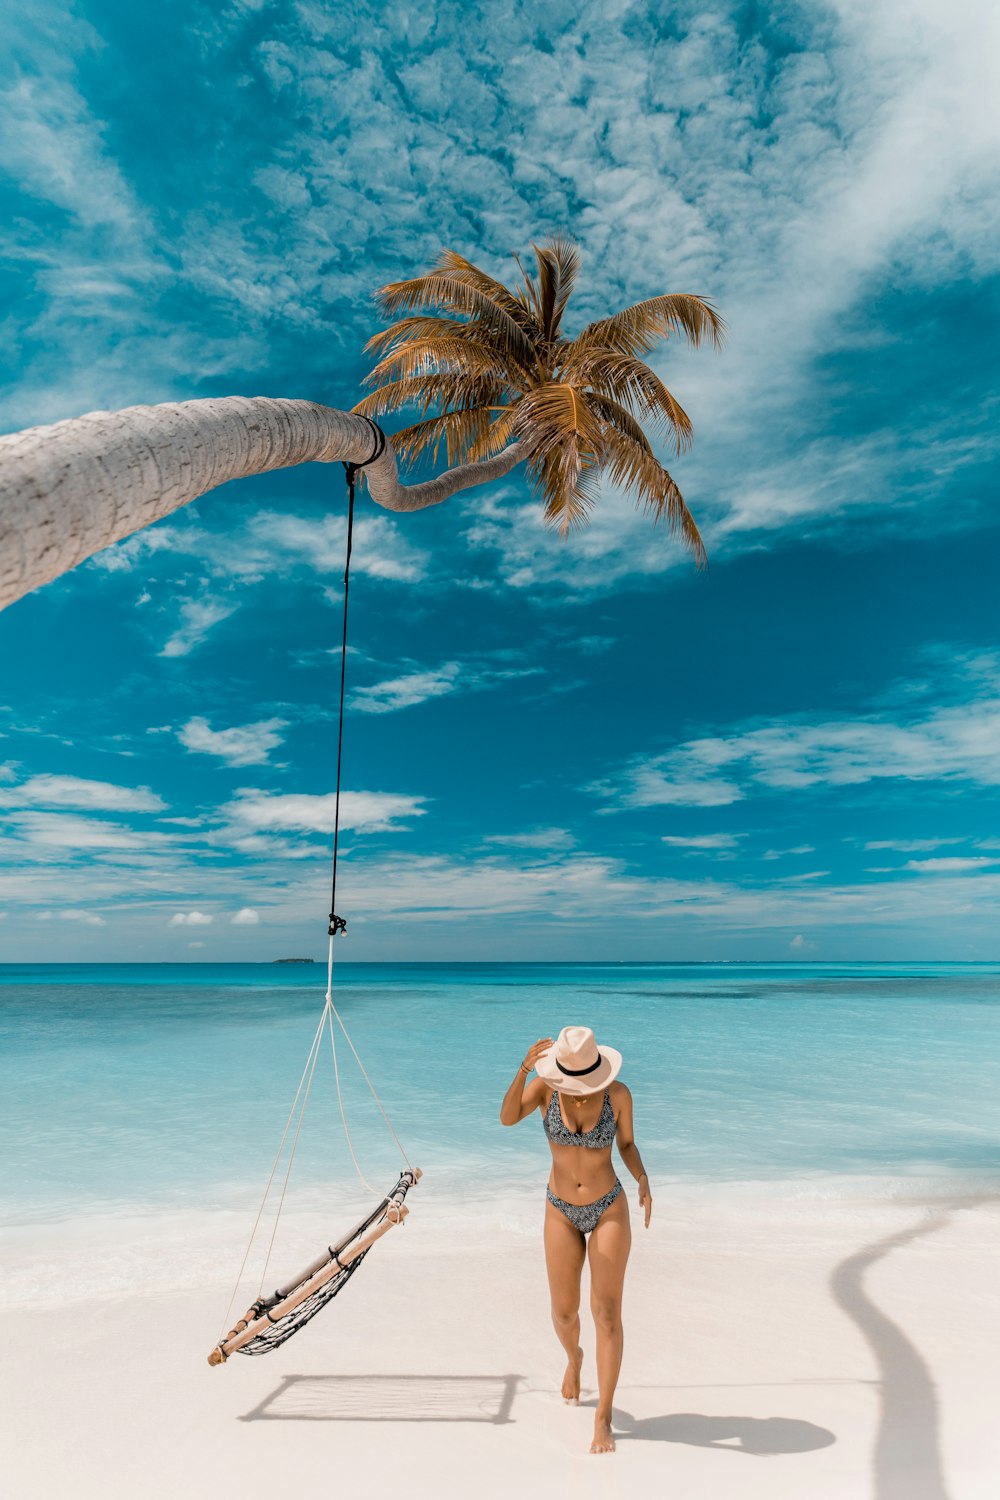 una persona in piedi su una spiaggia con una palma e una barca